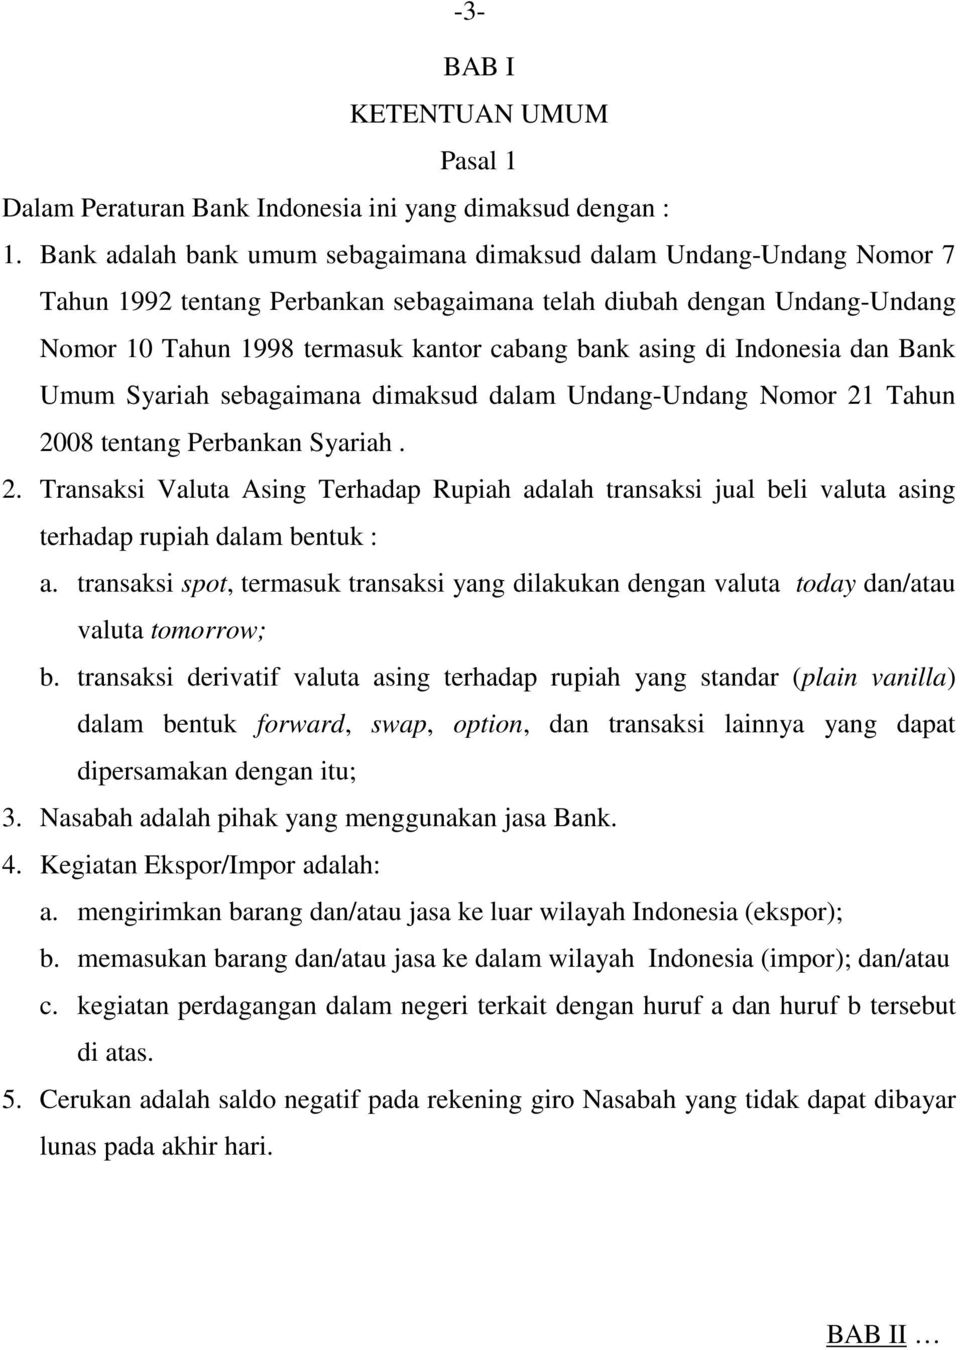 di Indonesia dan Bank Umum Syariah sebagaimana dimaksud dalam Undang-Undang Nomor 21 Tahun 2008 tentang Perbankan Syariah. 2. Transaksi Valuta Asing Terhadap Rupiah adalah transaksi jual beli valuta asing terhadap rupiah dalam bentuk : a.